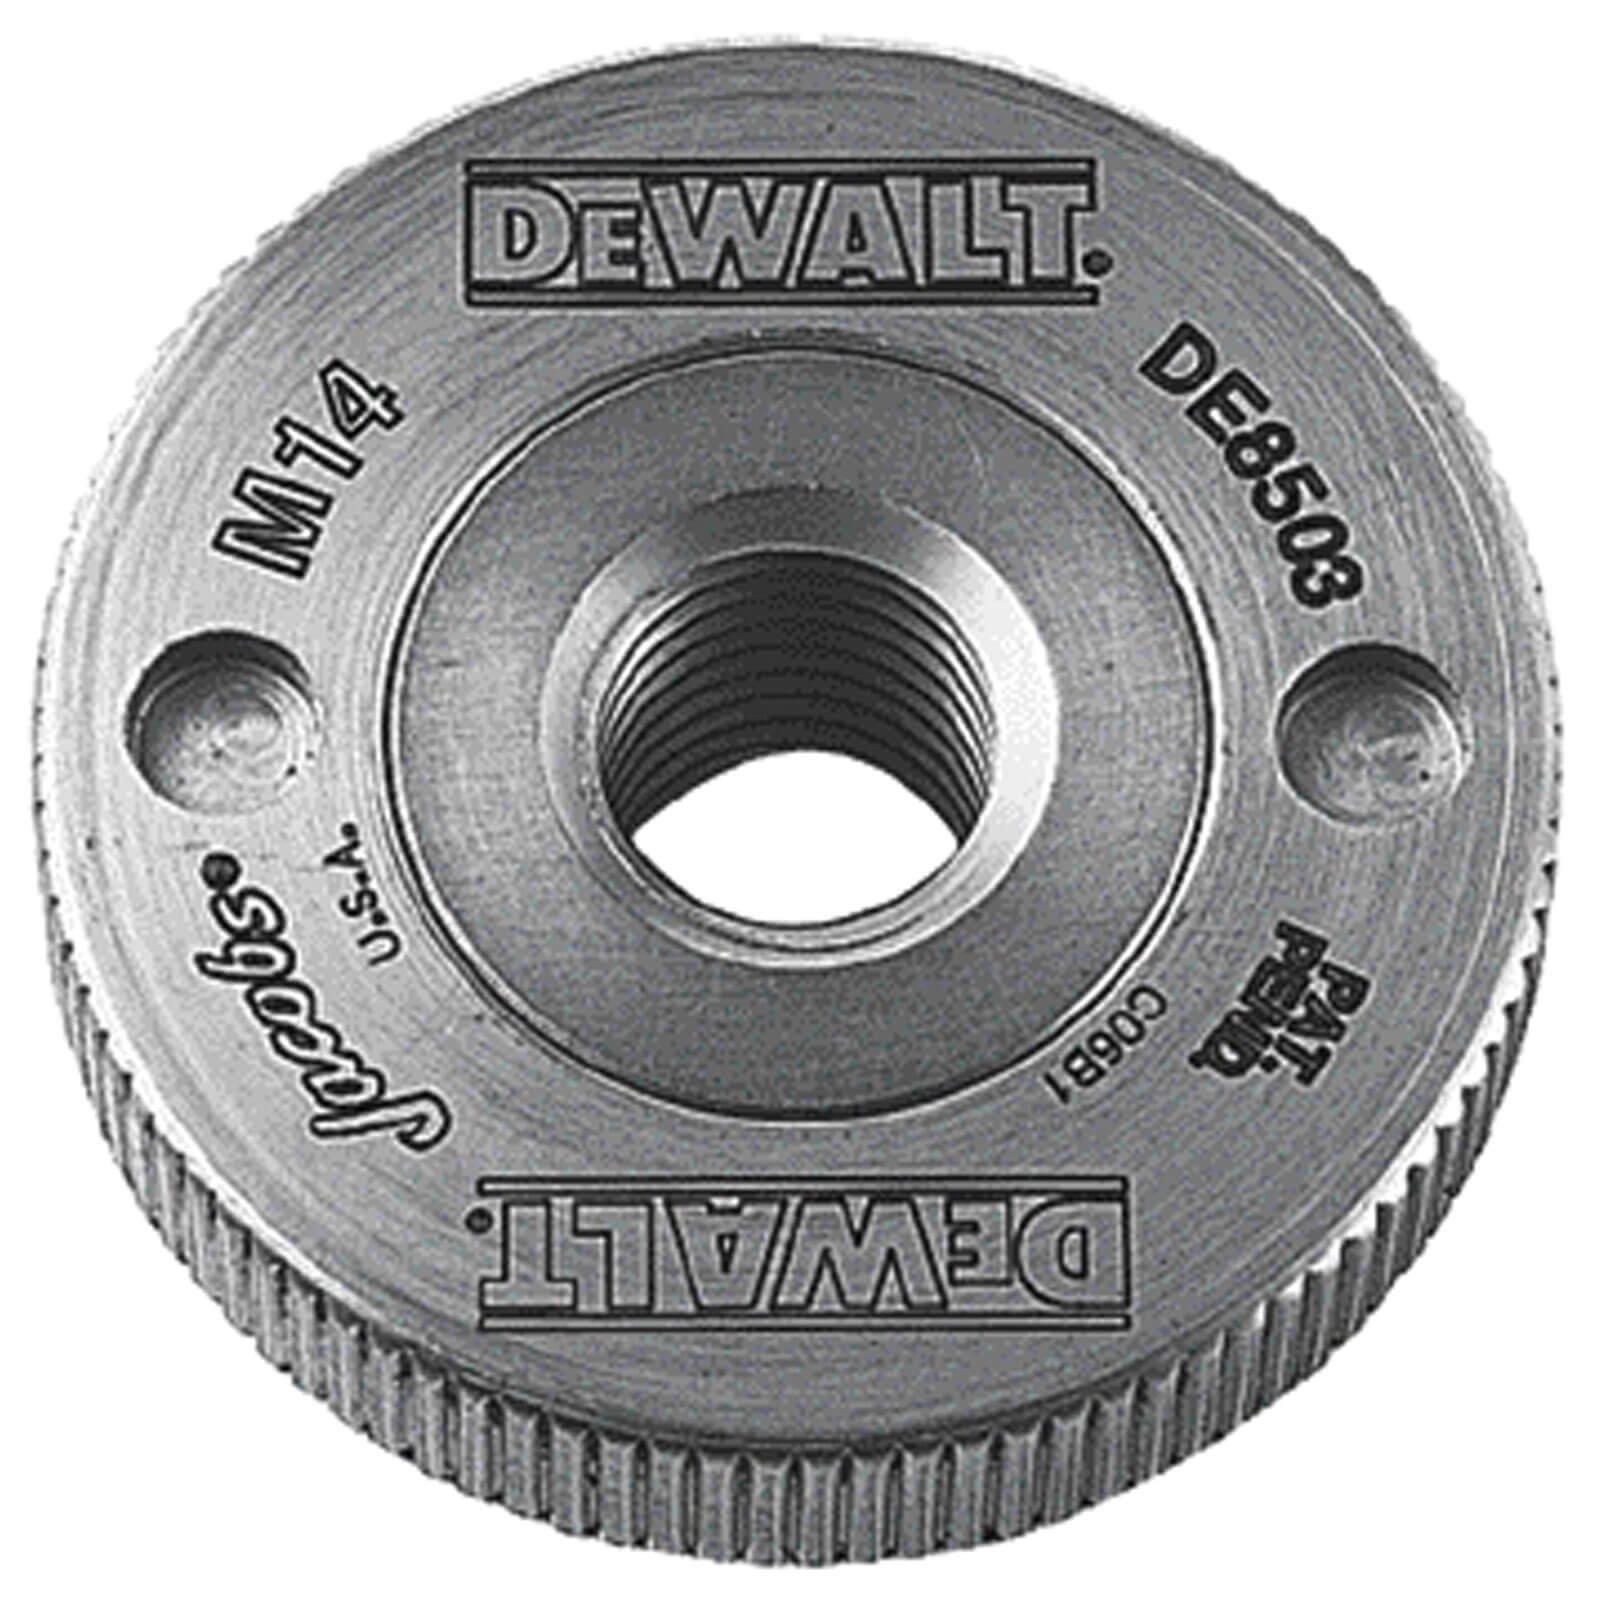 Photo of Dewalt De8503 Quick Release Angle Grinder Flange Nut